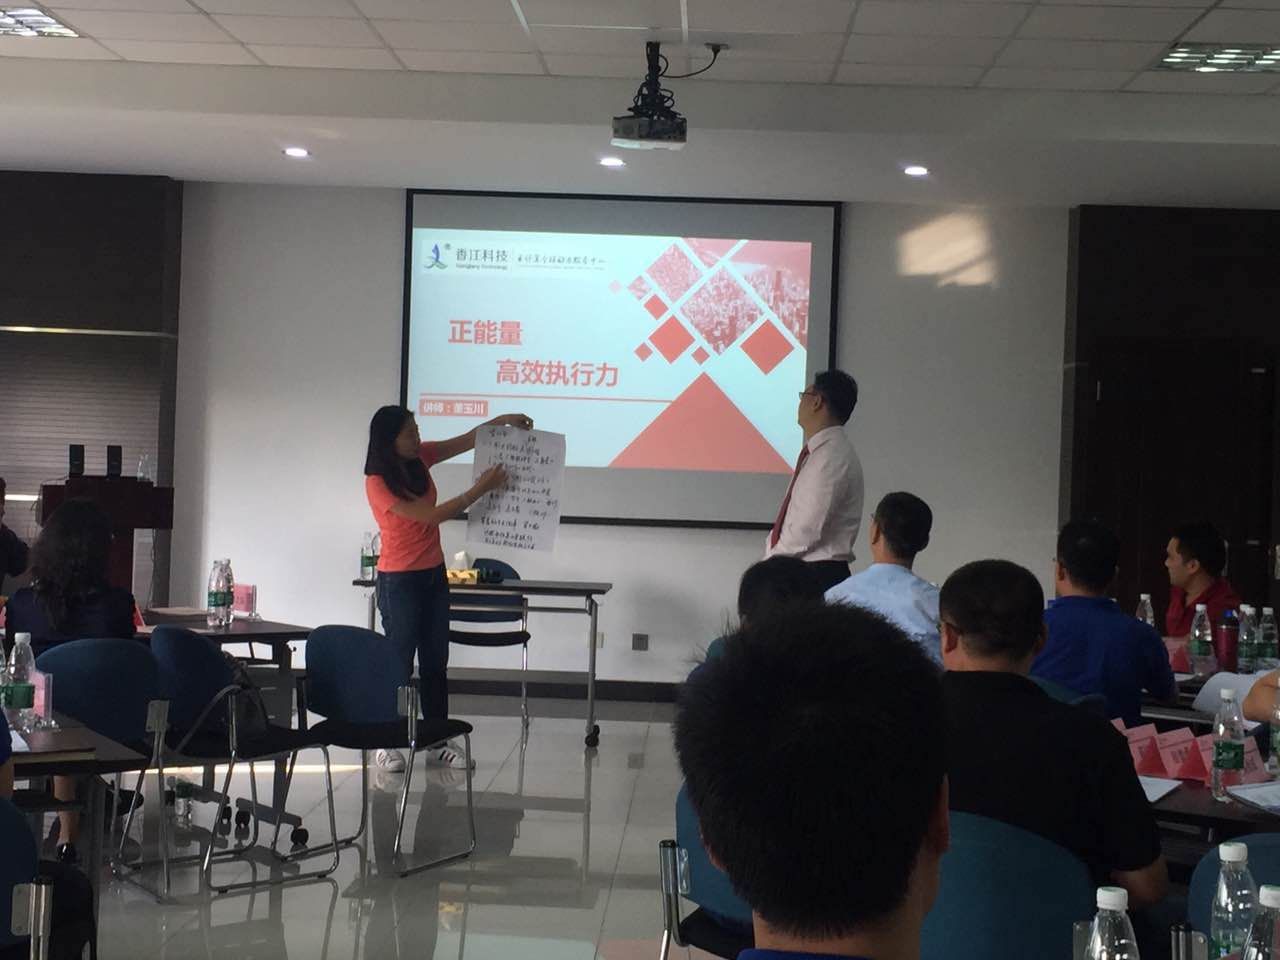 9月16-17董玉川老师受邀给香江科技公司讲授《正能量与高效执行》的课程